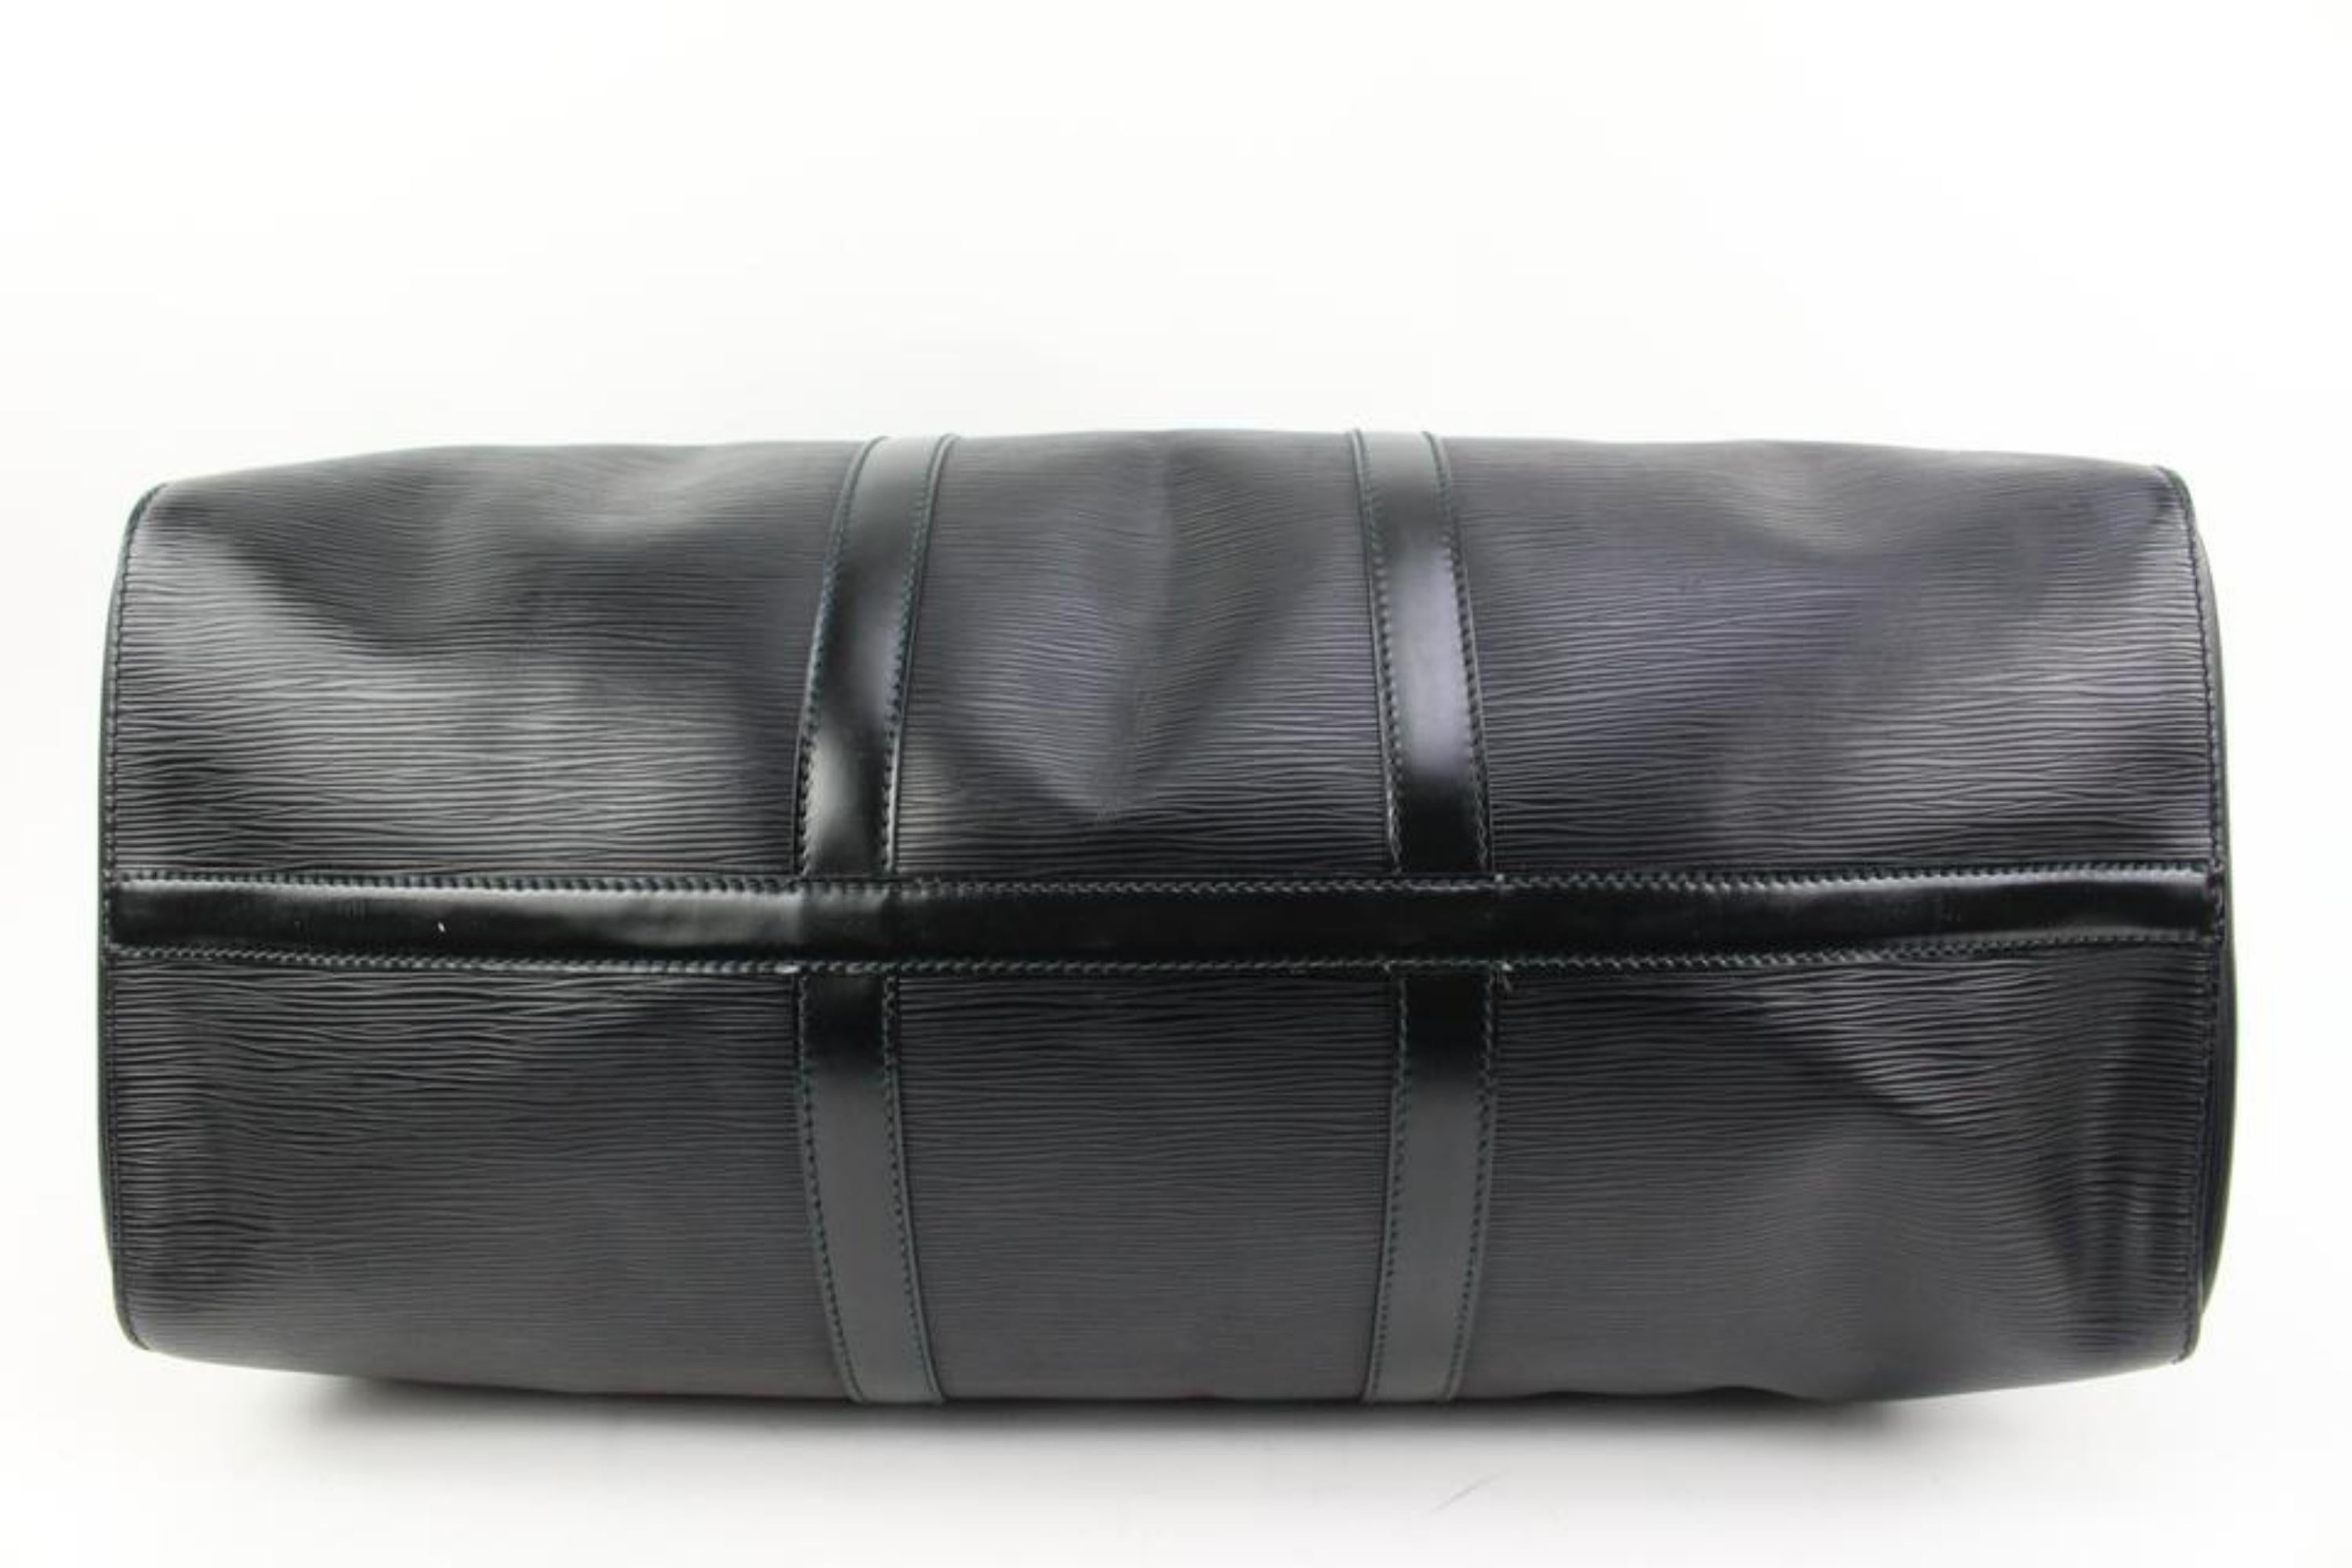 Louis Vuitton Black Epi Leather Noir Keepall 50 Duffle Bag 66lv315s 6